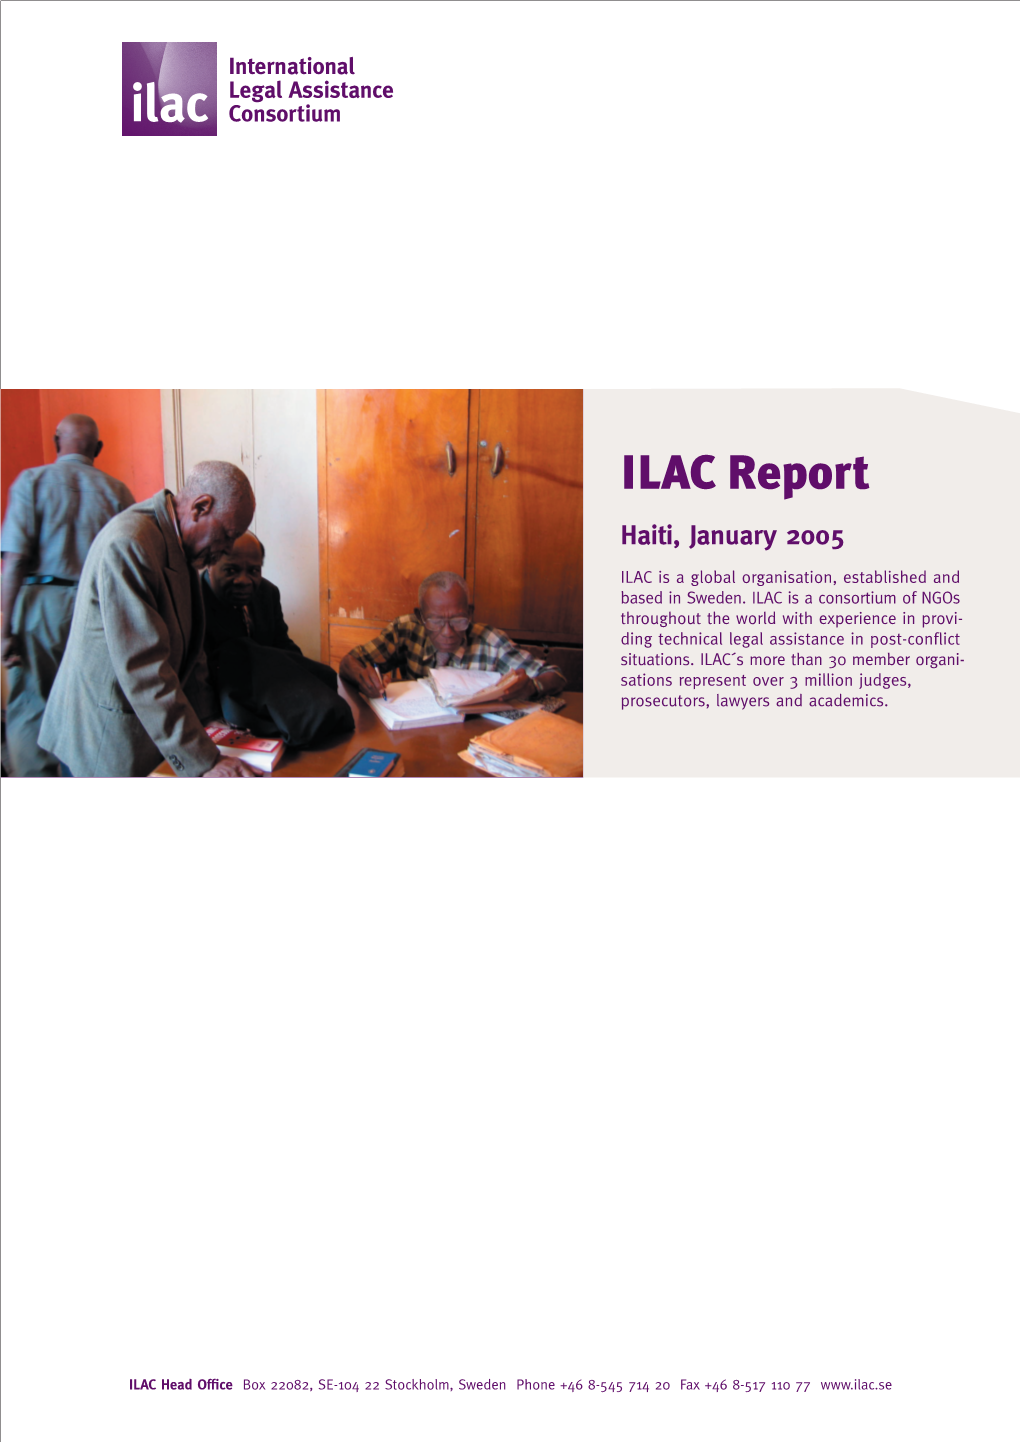 ILAC Report Haiti, January 2005